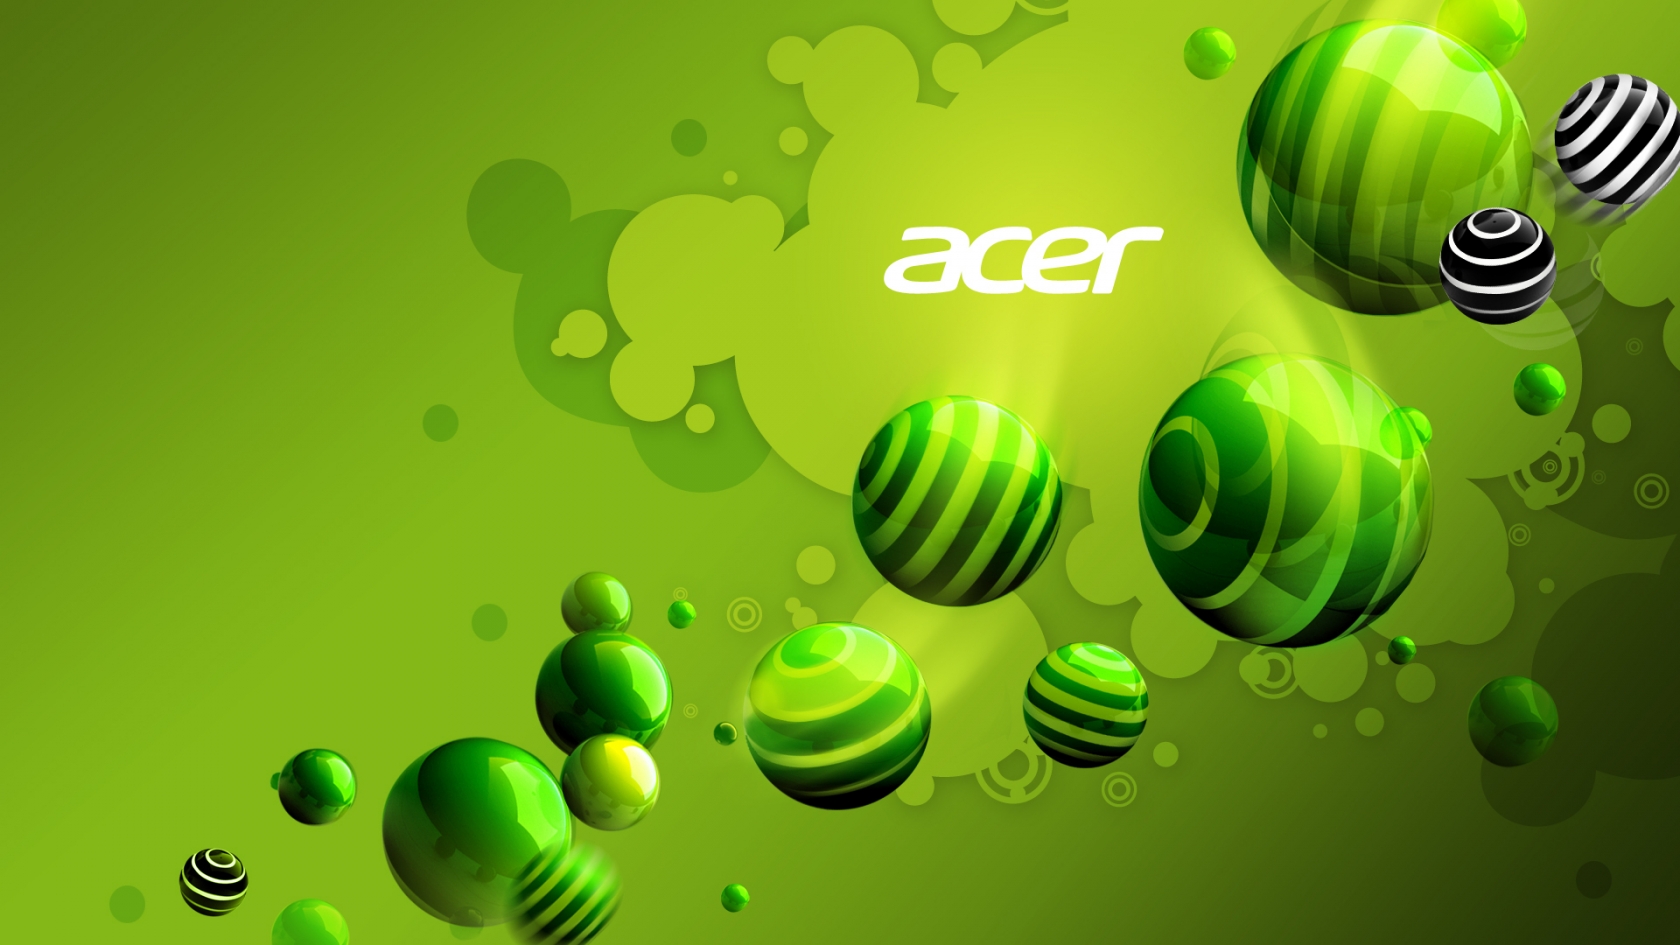 Acer Green World for 1680 x 945 HDTV resolution